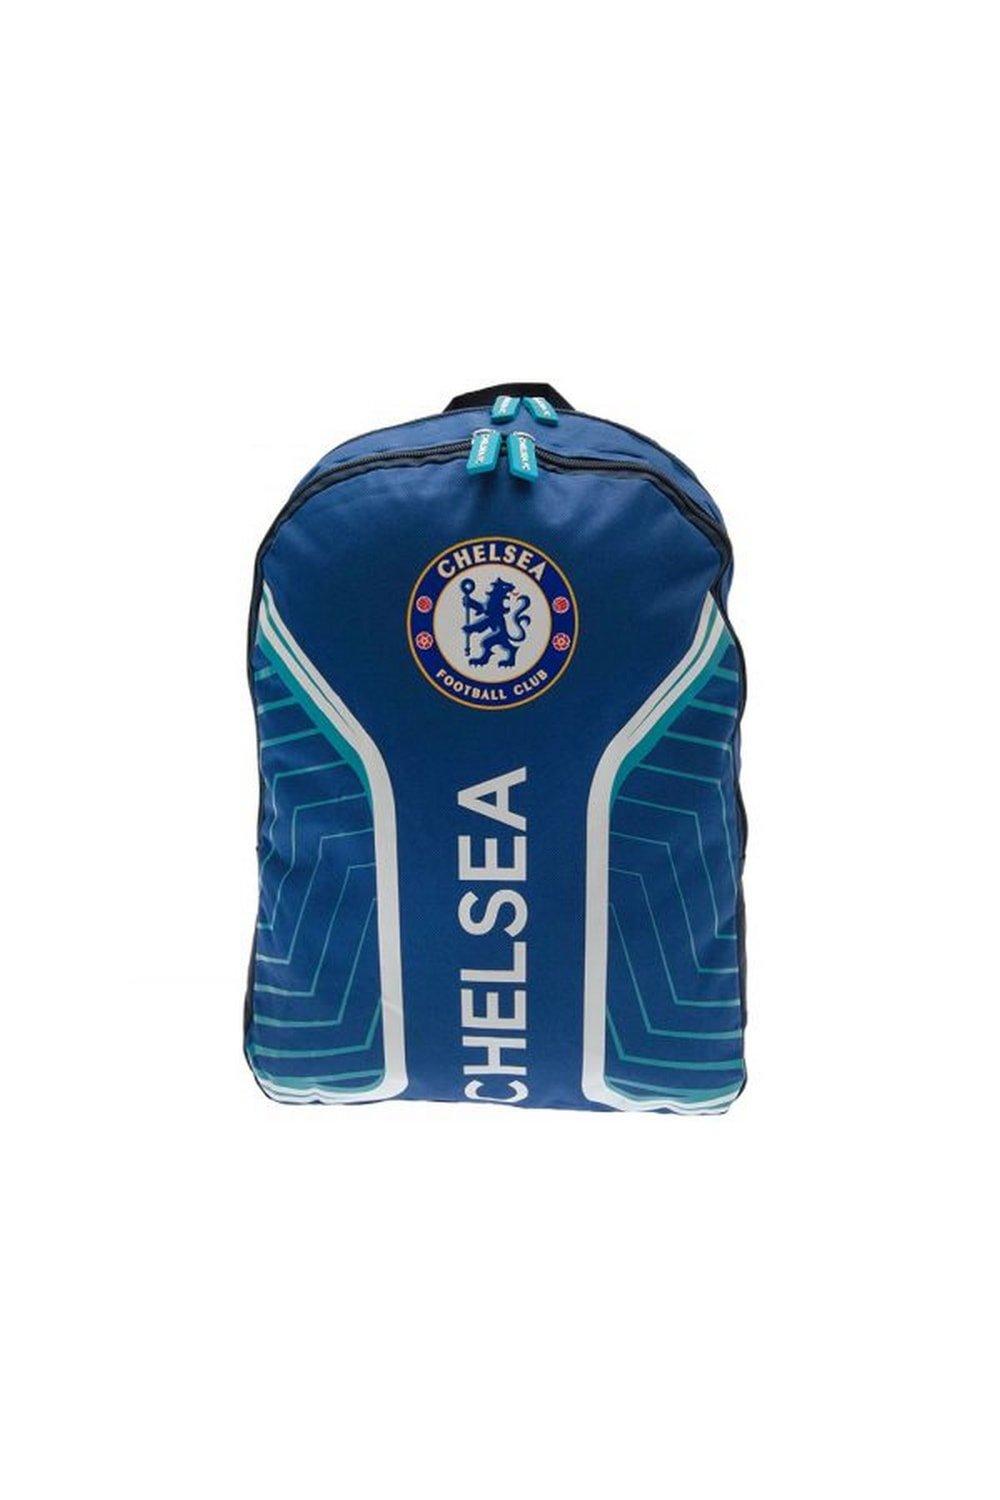 цена Флэш-рюкзак Chelsea FC, синий